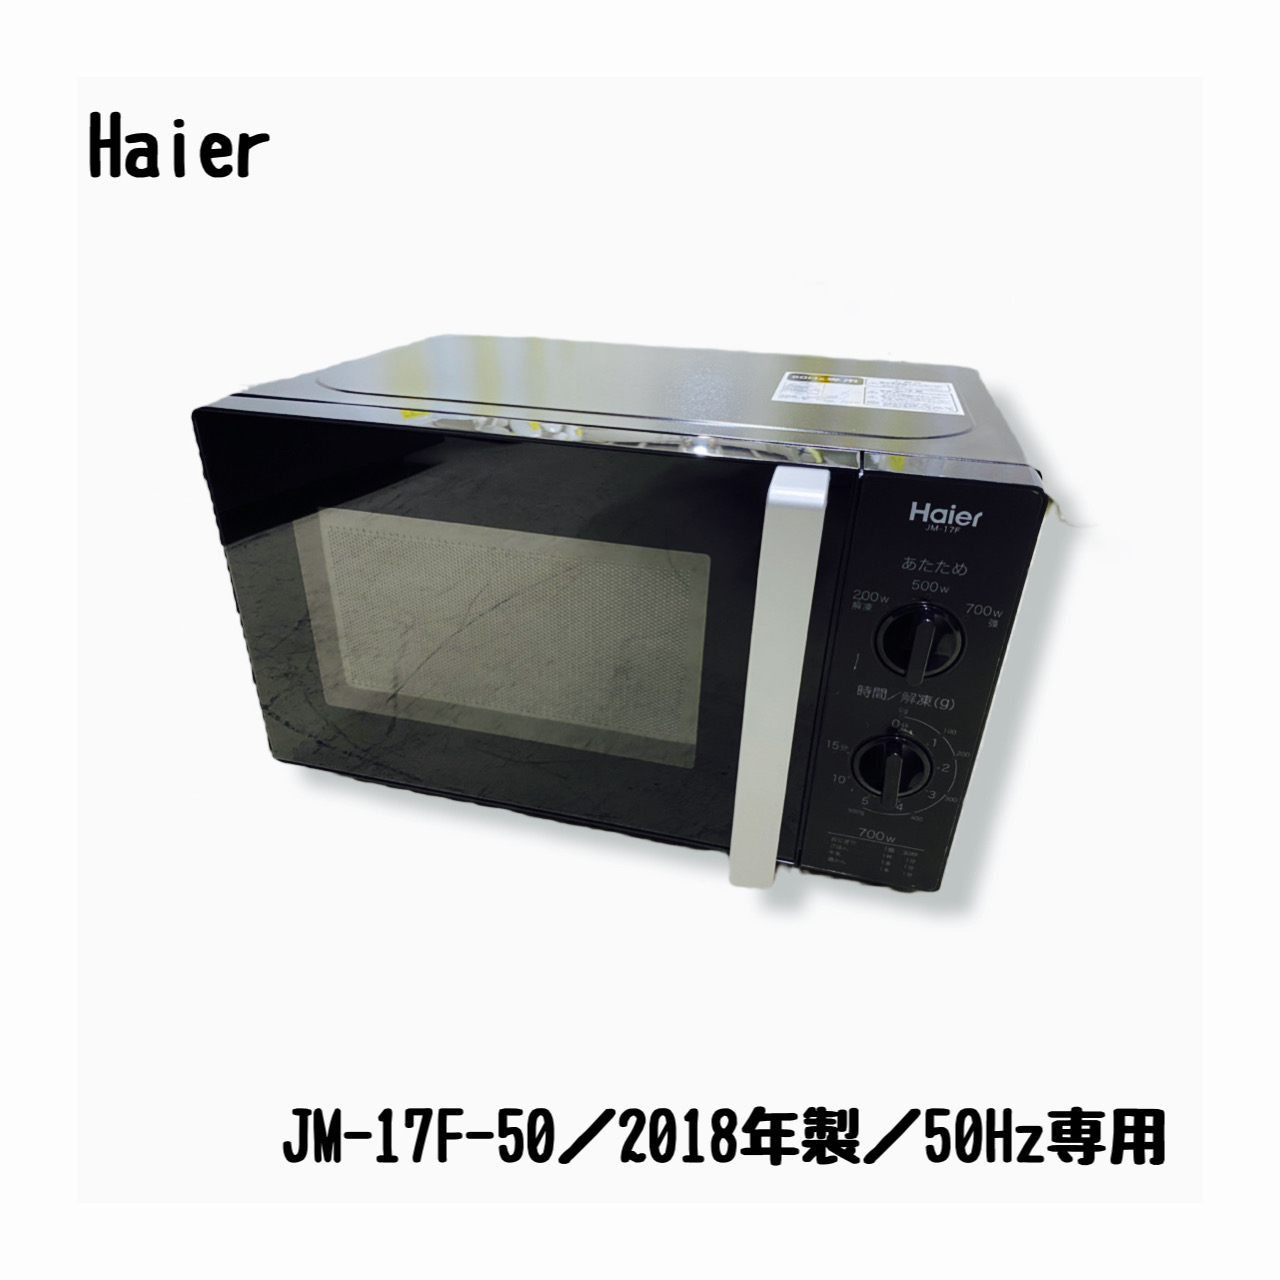 【新品未開封】 Haier ハイアール 電子レンジ JM-17F-60 ホワイト